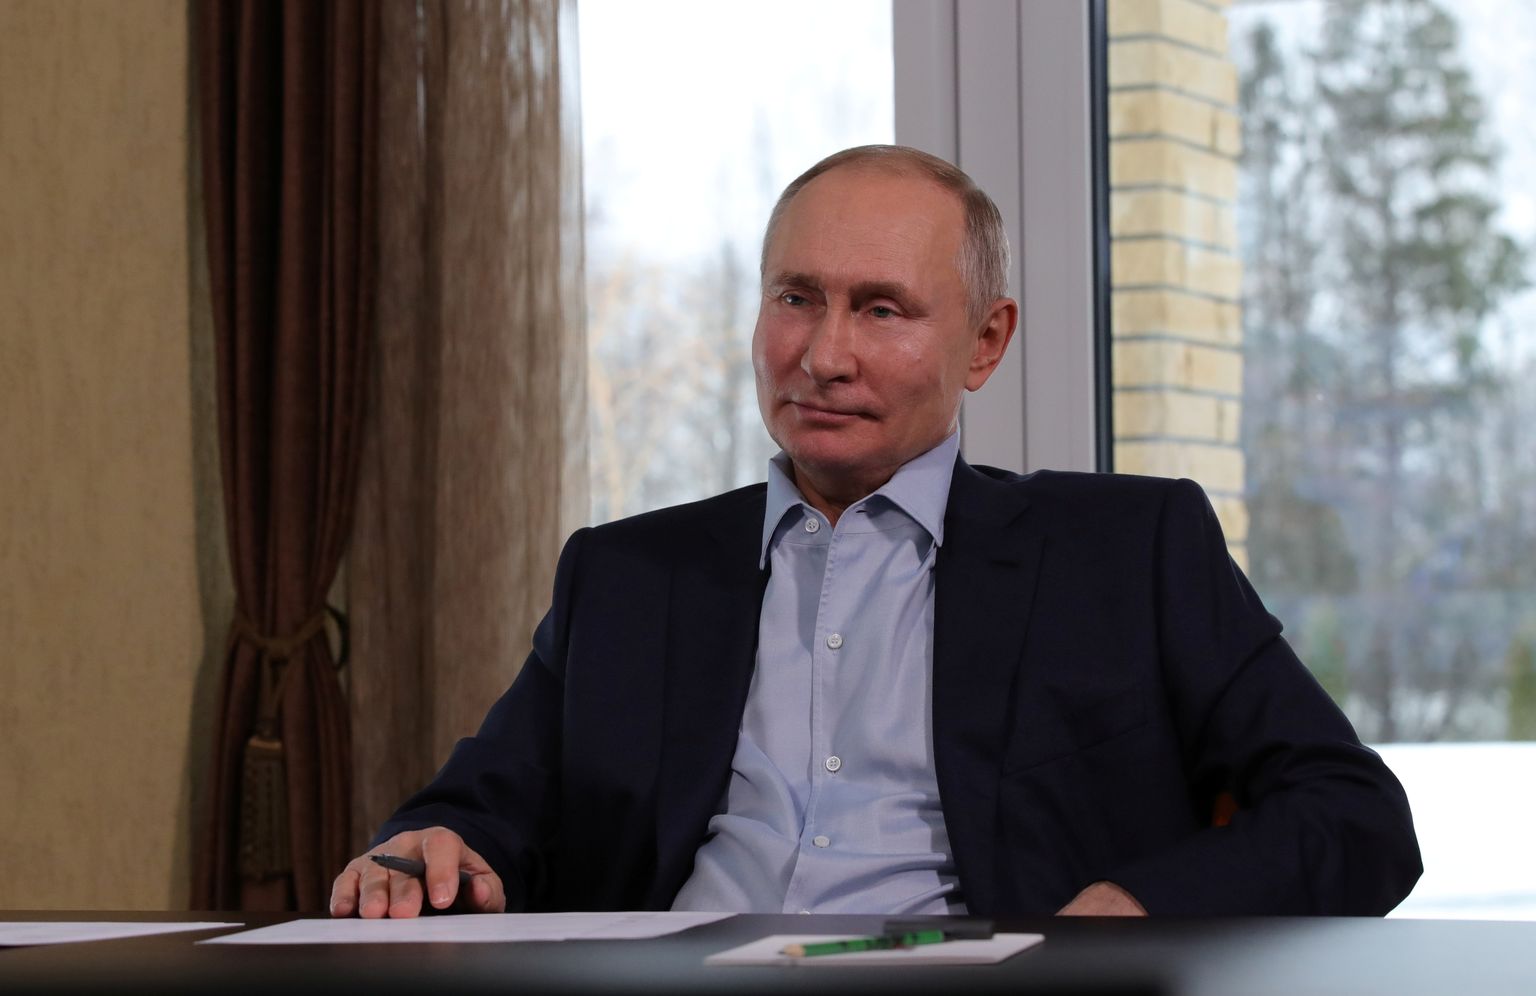 Venemaa president Vladimir Putin kohtus 25. jaanuaril oma Zavidovo residentsis video vahendusel üliõpilastega ja eitas, et talle kuulub Musta mere ääres villa